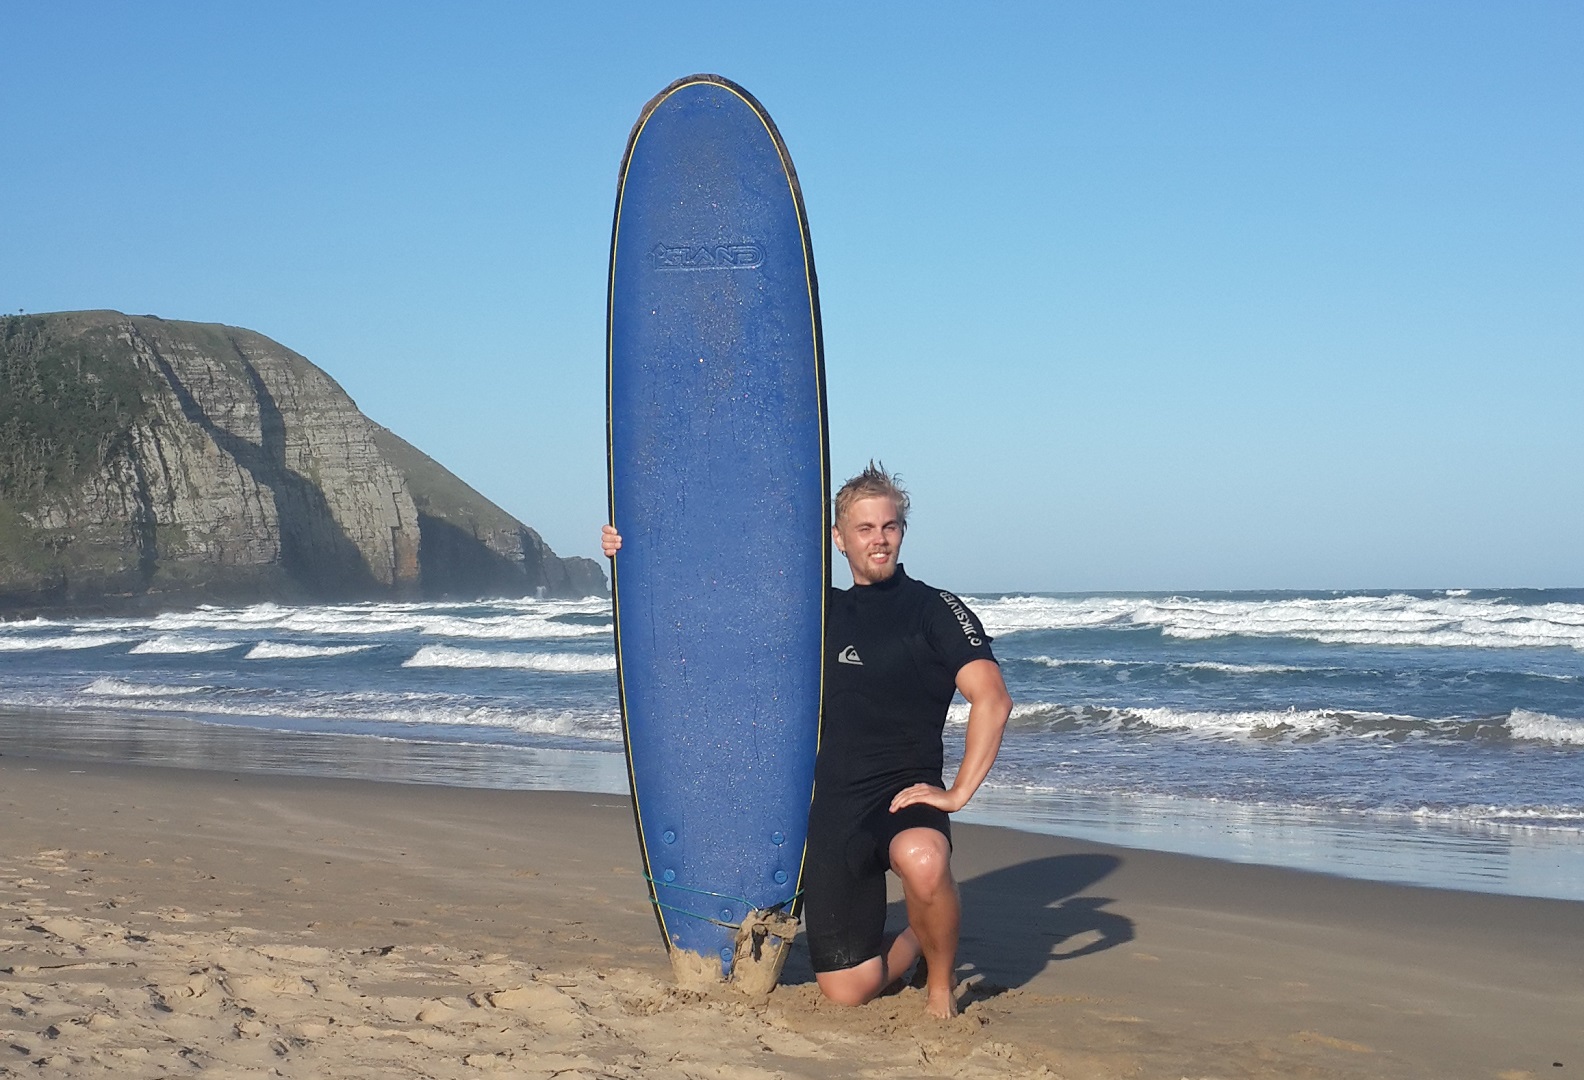 Etelä-Afrikka on tunnettu hyvistä surffausmahdollisuuksistaan. Kuva Coffee Baysta. Surffasin ensimmäistä kertaa ja onnistuin kelvollisesti päihittämään muutaman aallon.